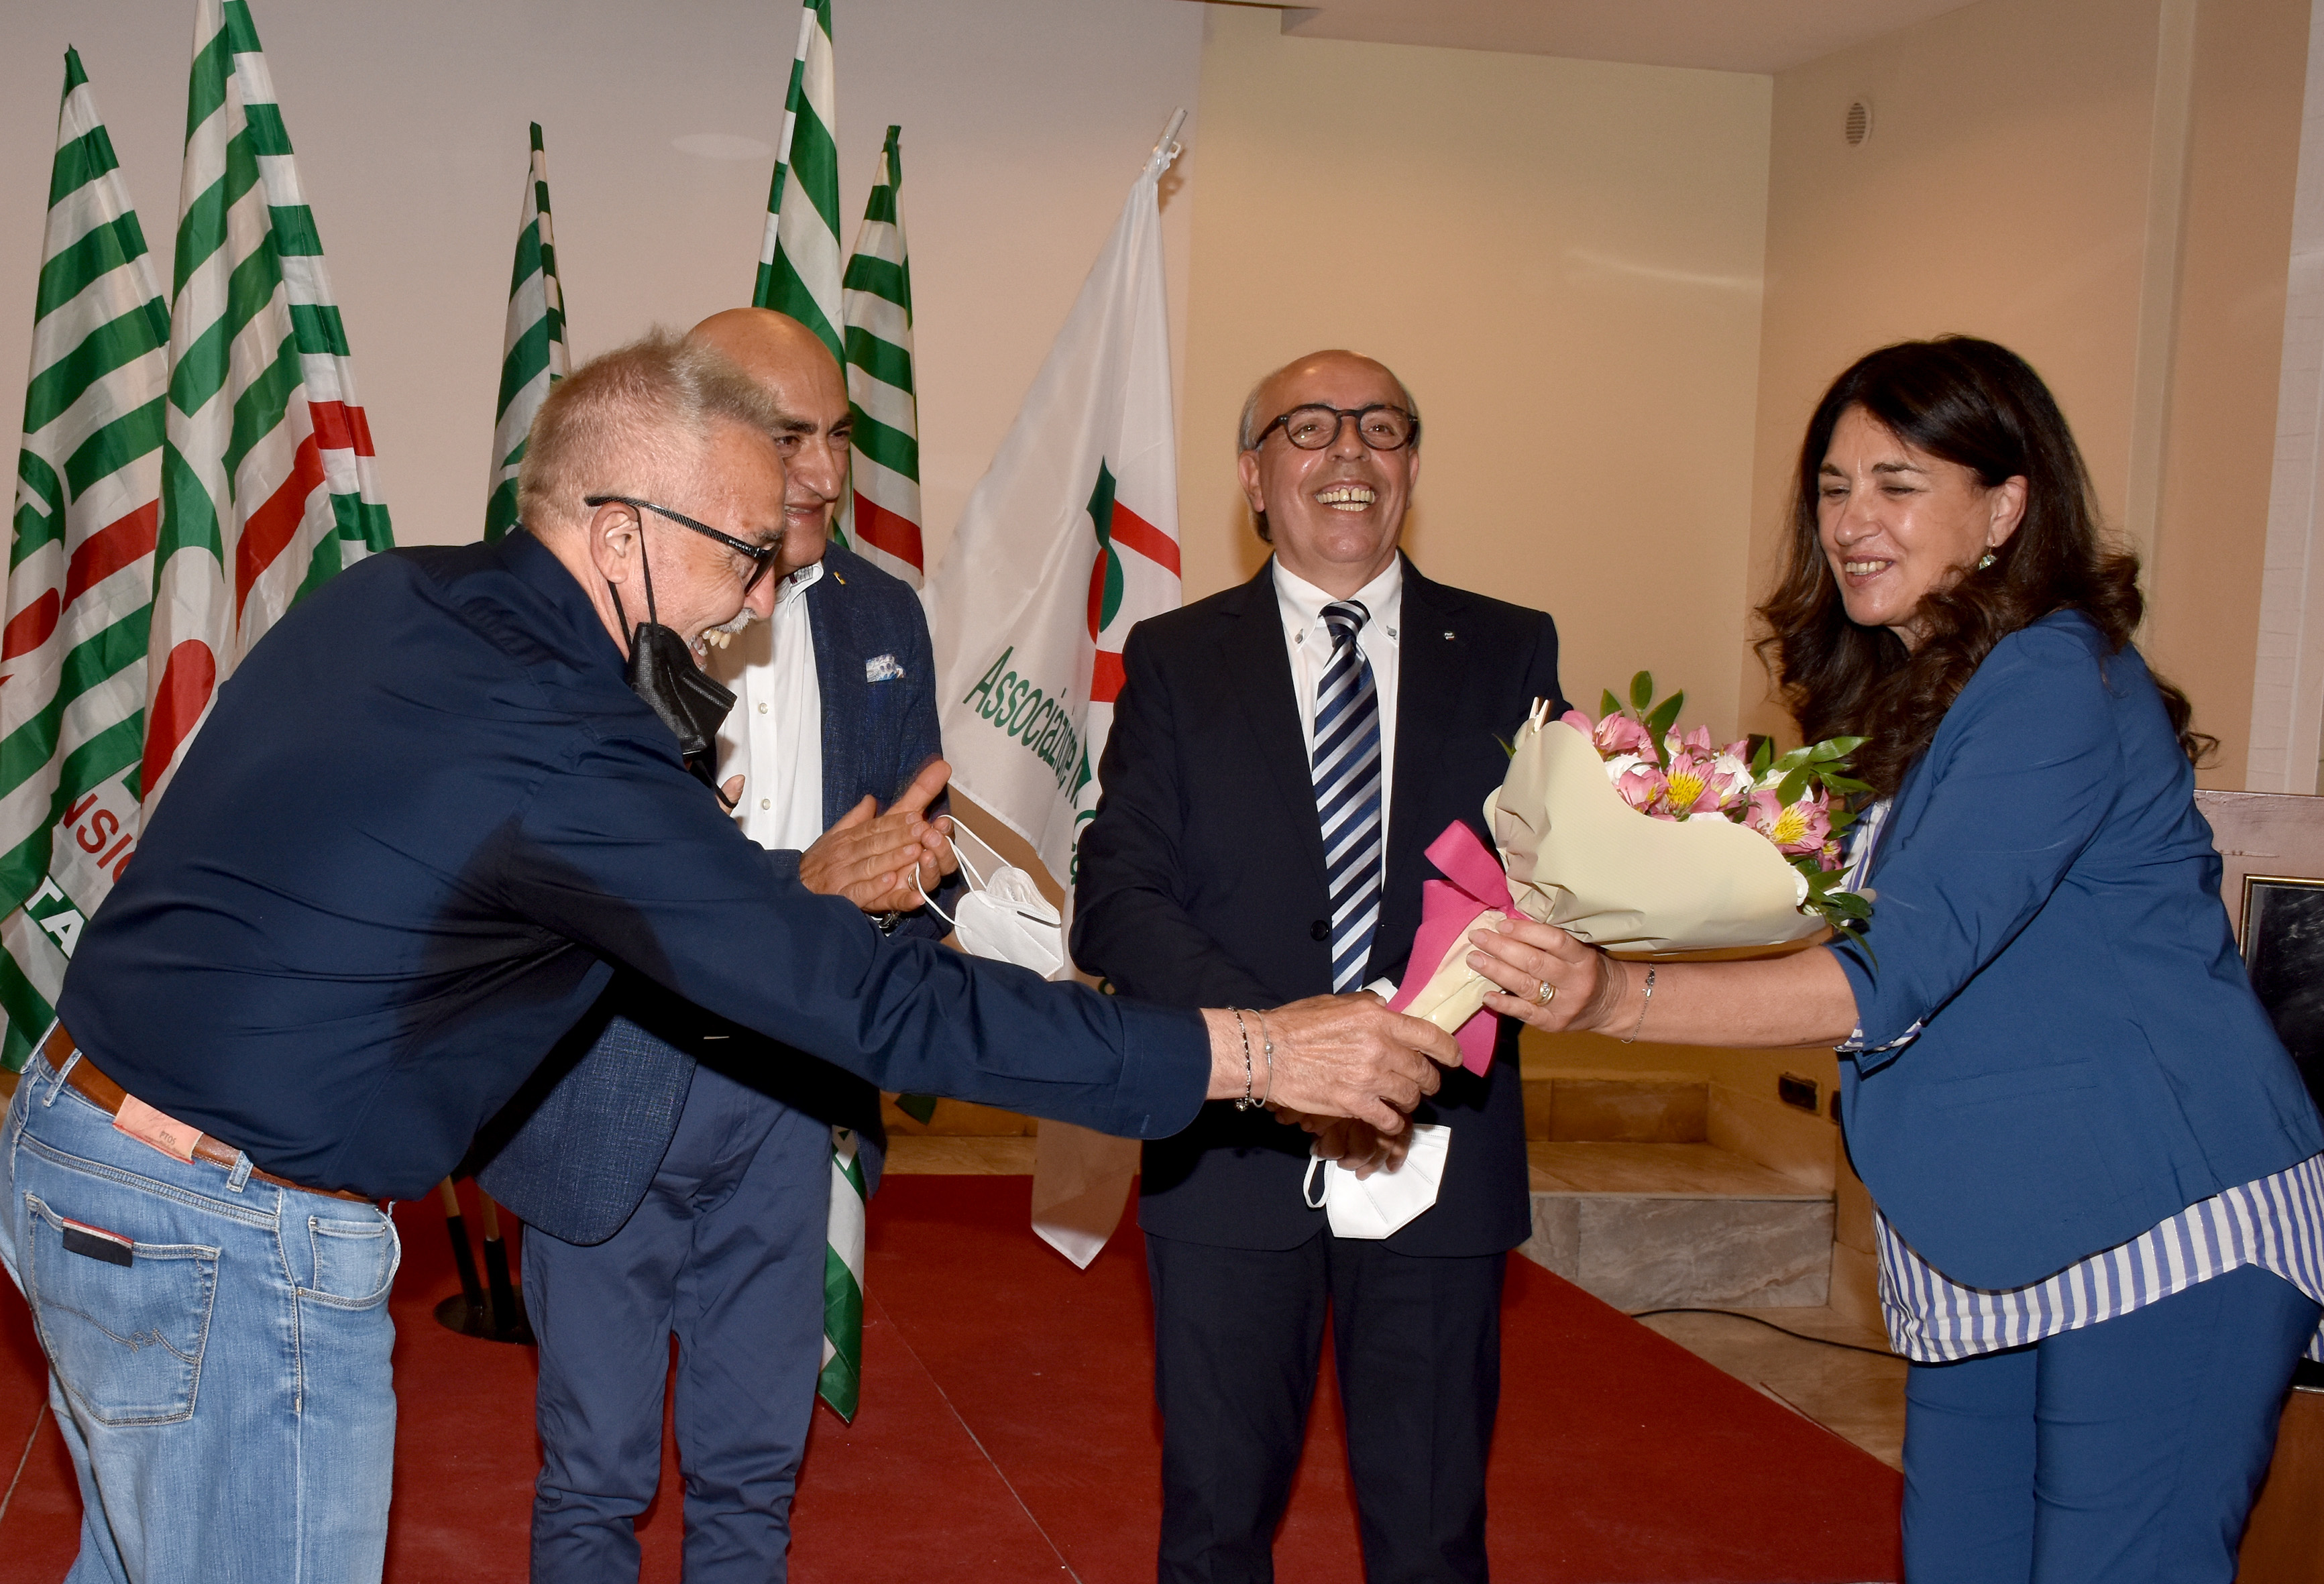 Elezioni Segreteria FNP CISL Catania 27 maggio 2021